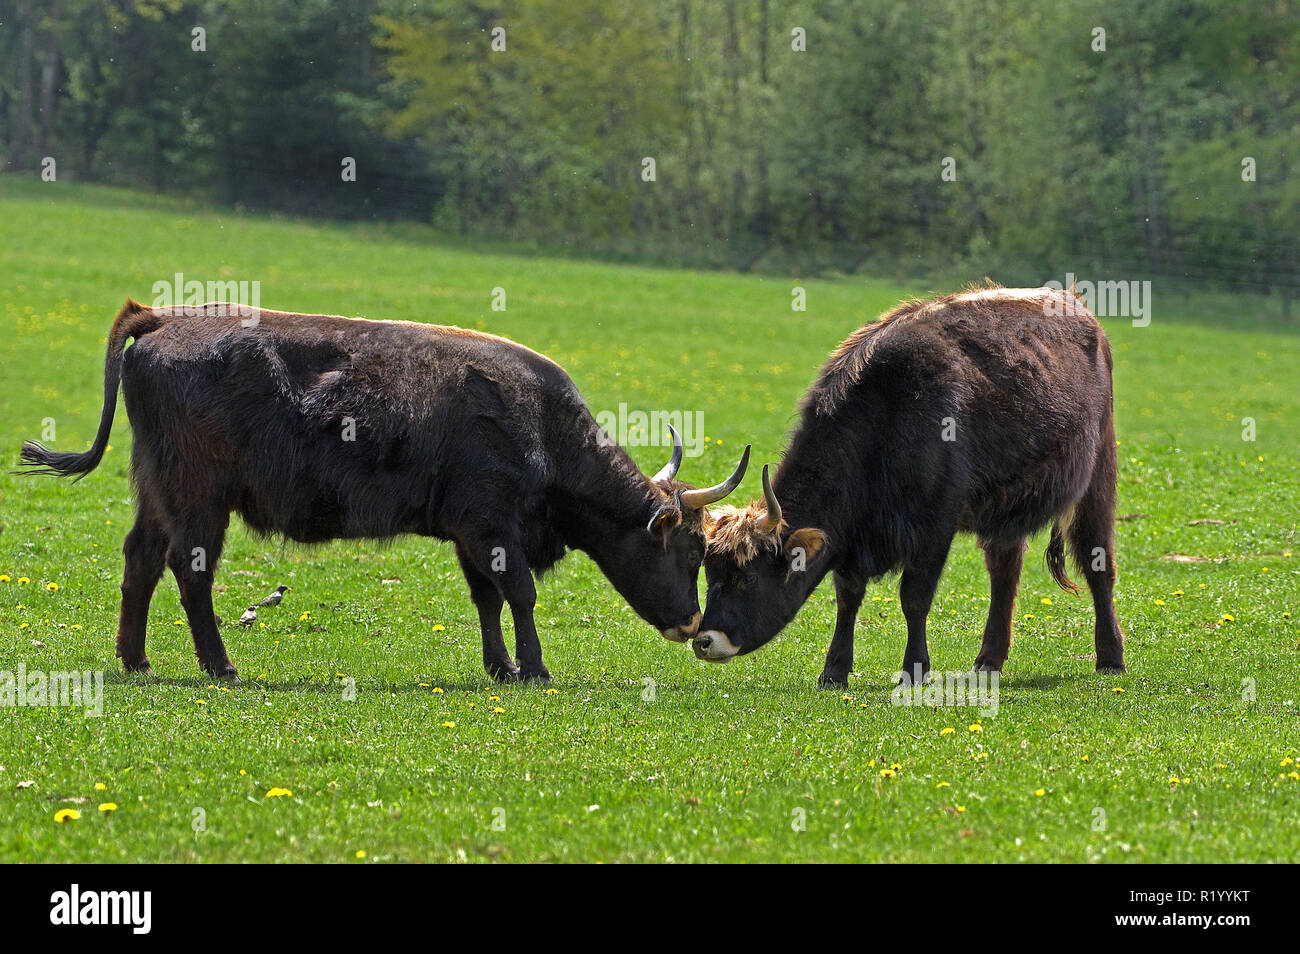 L'Aurochs de Heck, recréé les bovins (Bos primigenius primigenius). Deux vaches dans un pré, à l'inhalation de l'autre. Allemagne Banque D'Images